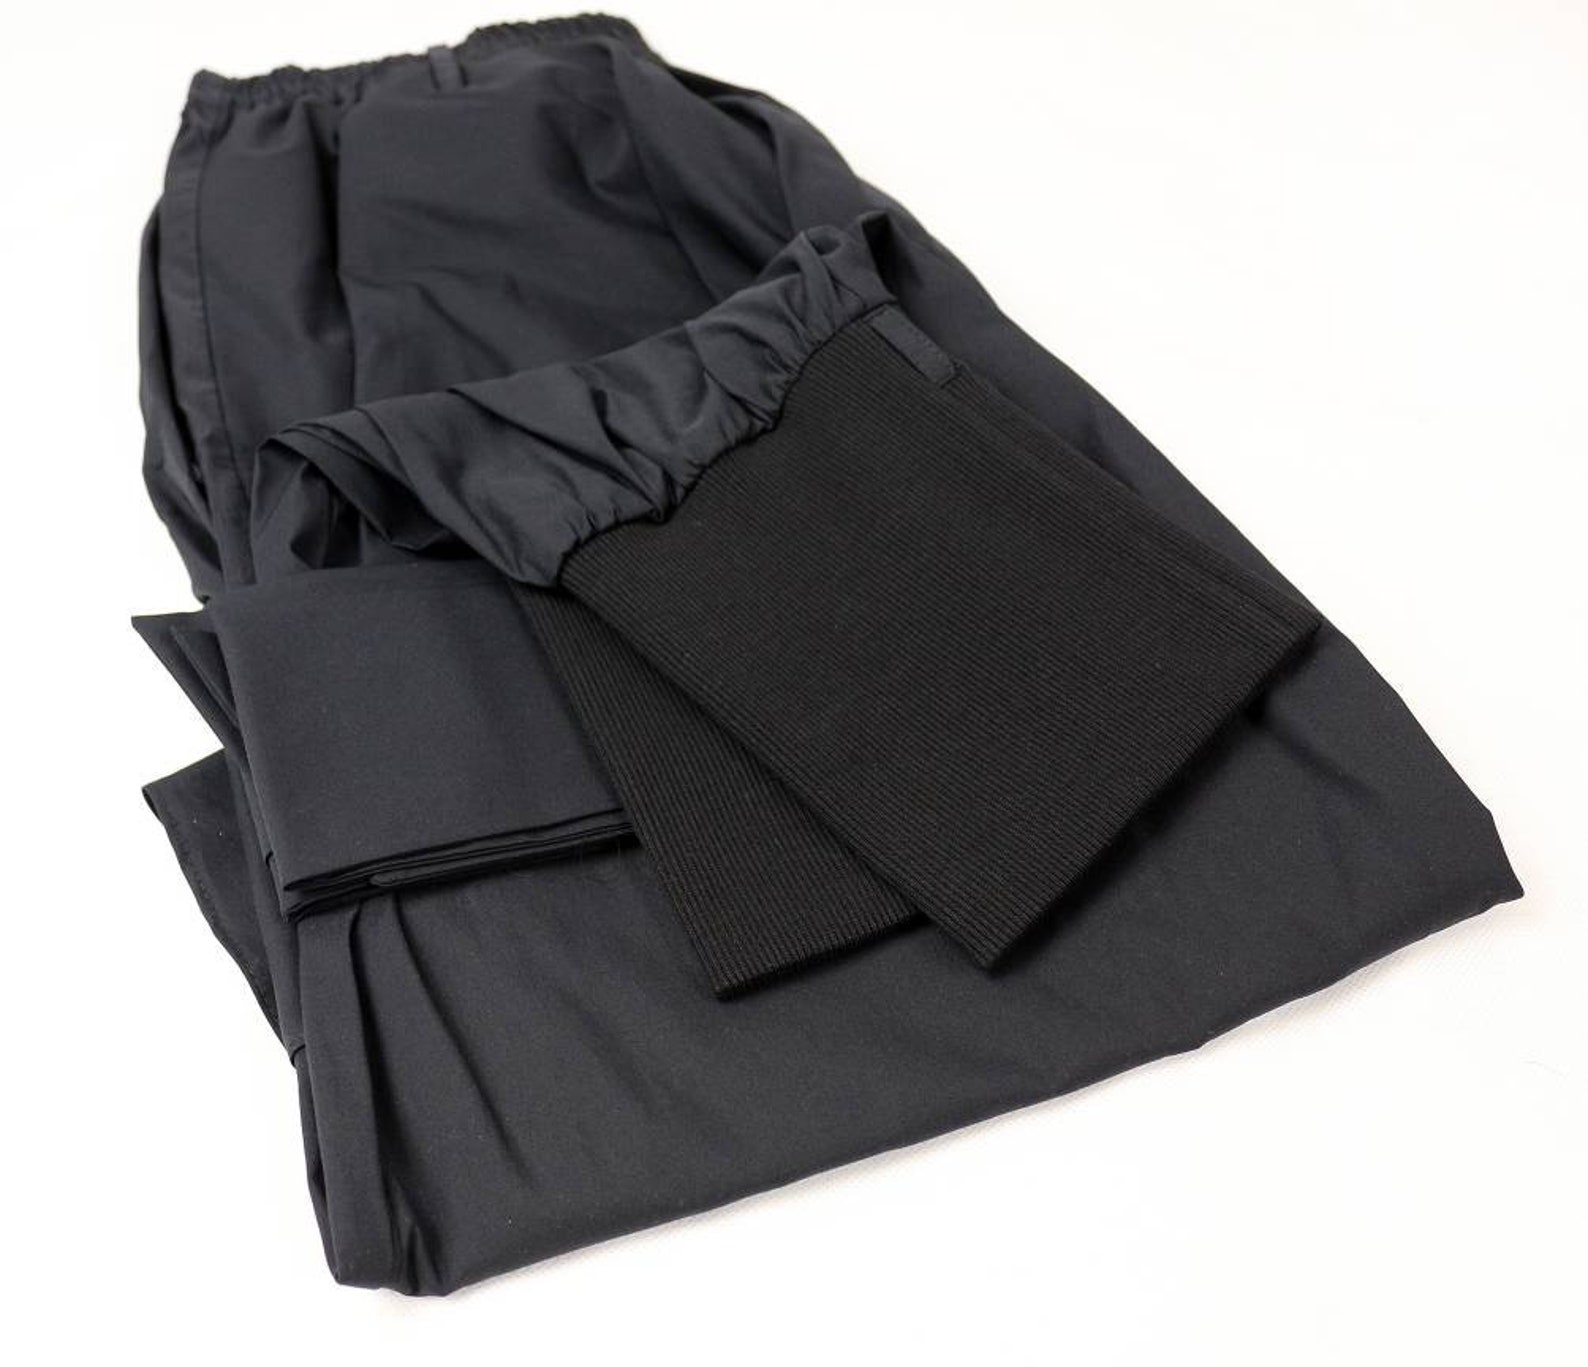 Hakama Pants V3 Black Cotton Unisex Oversized - Etsy